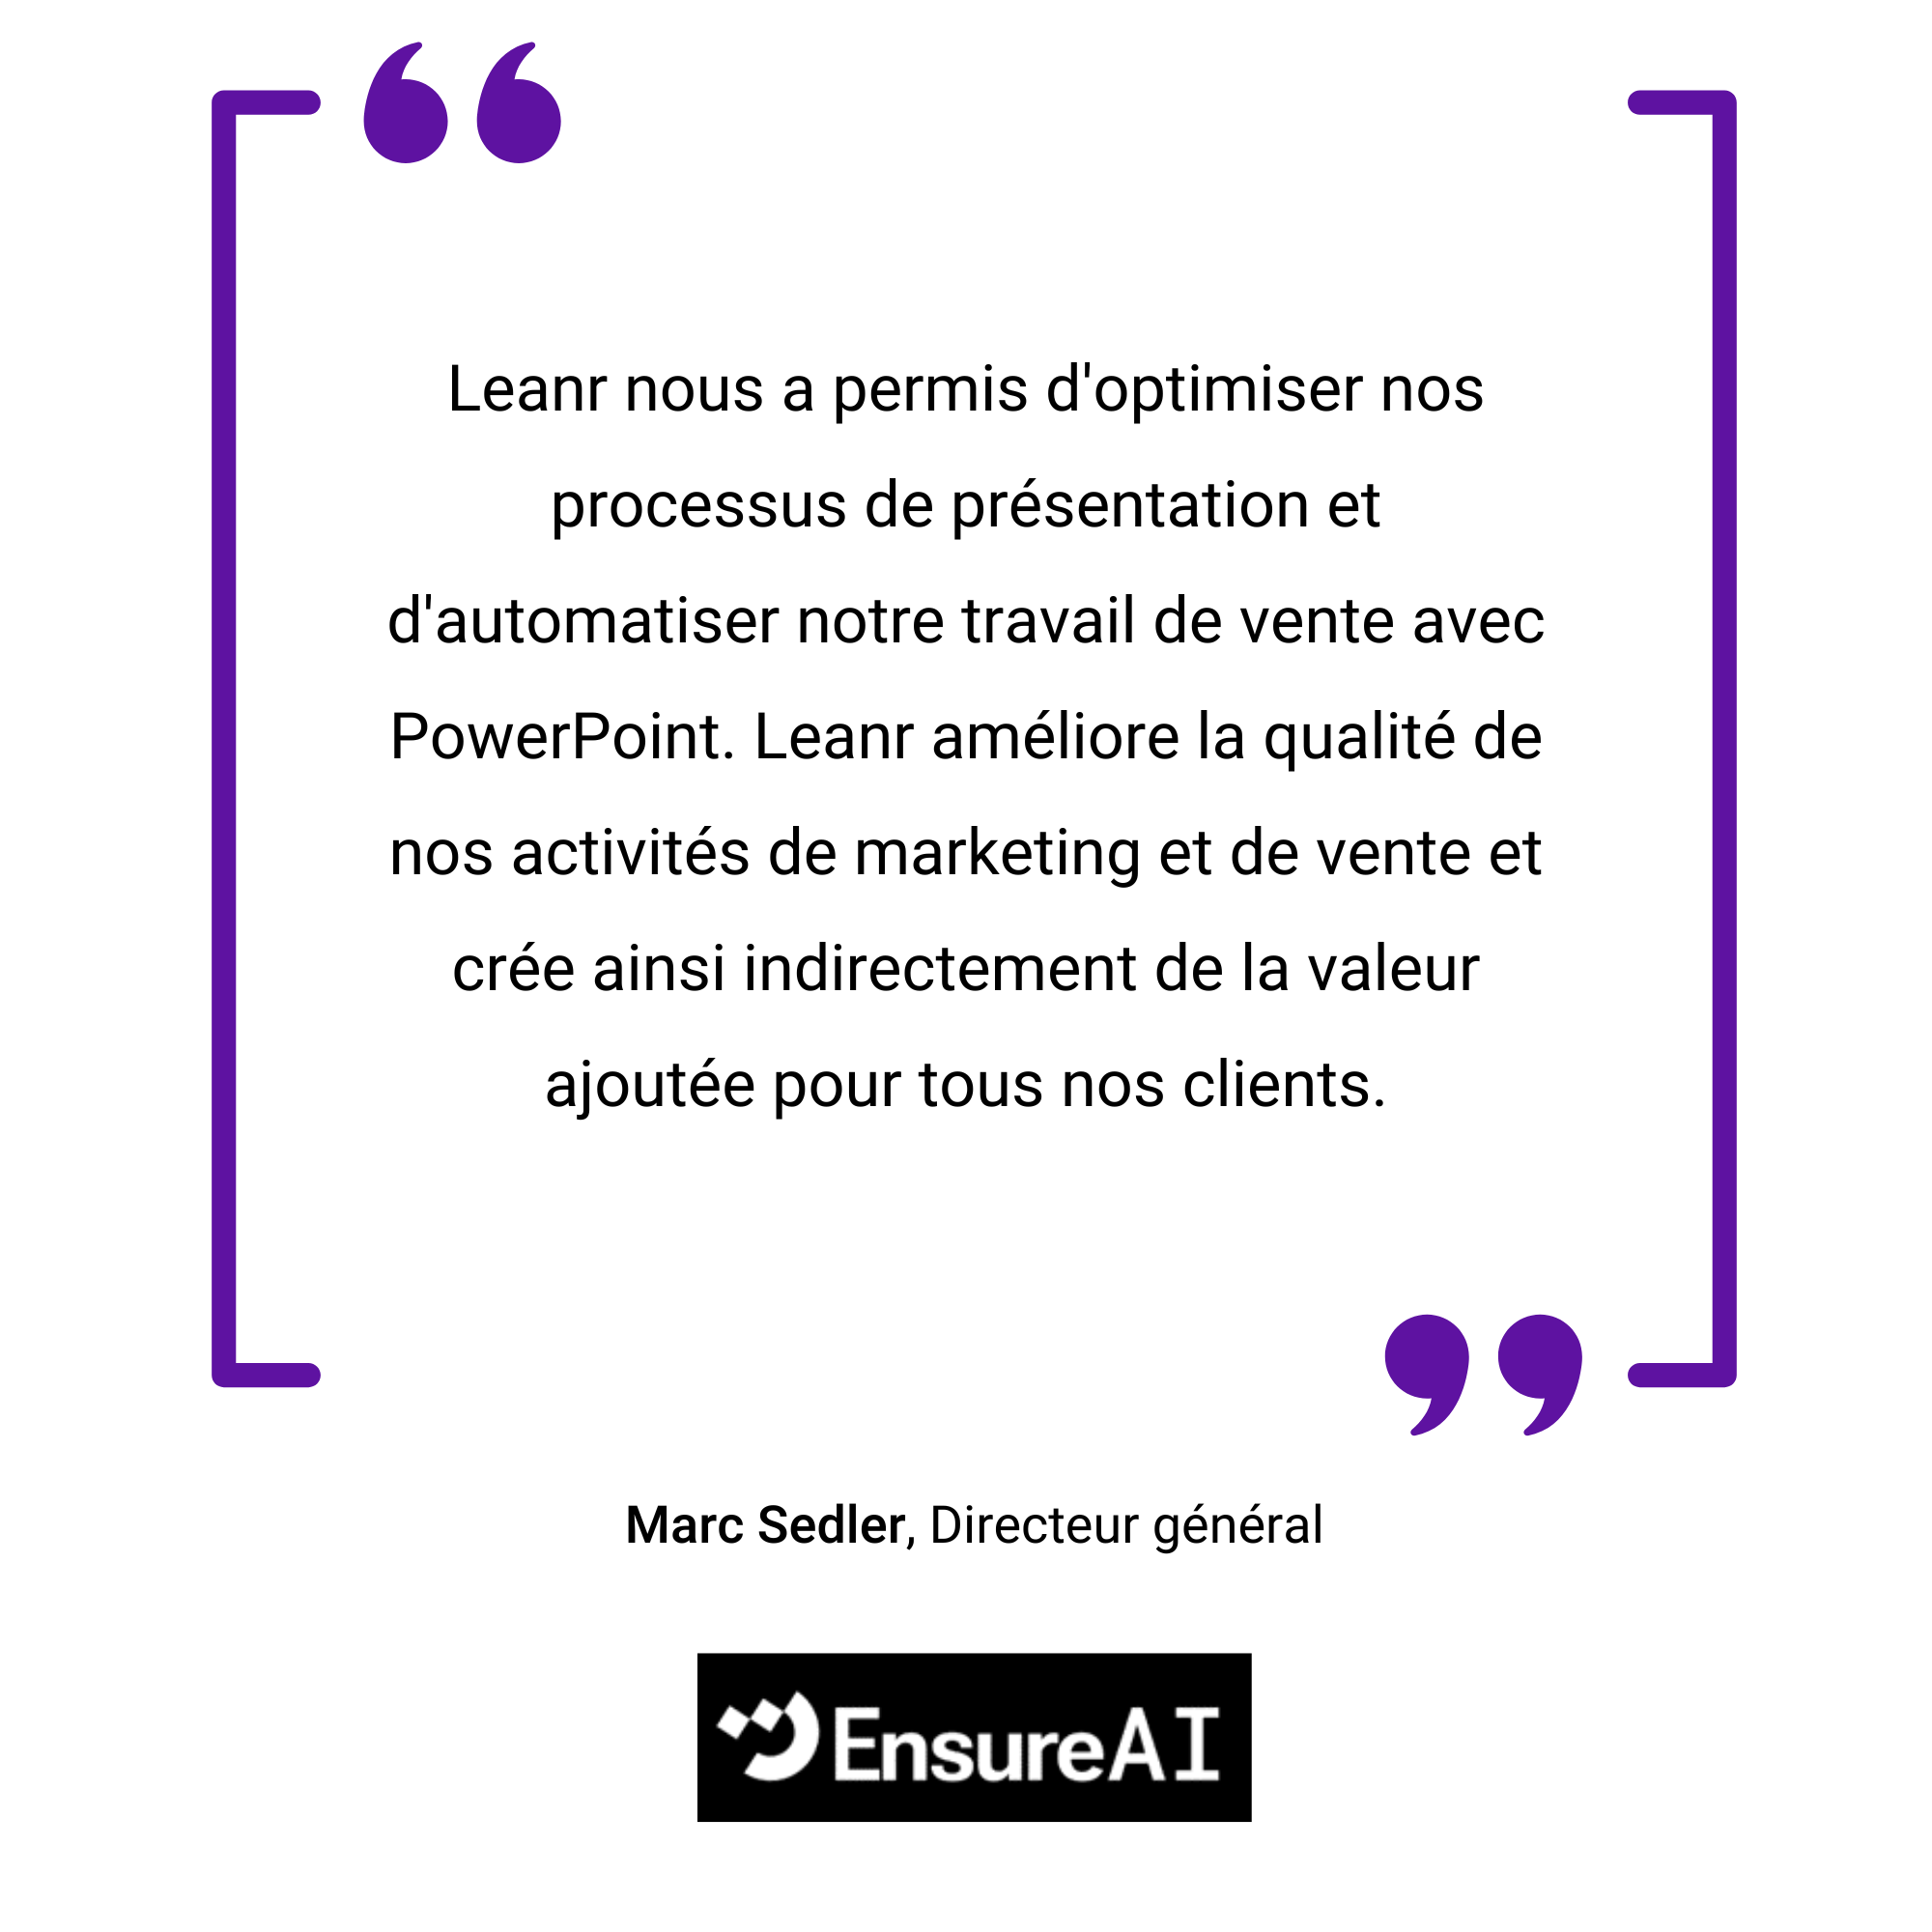 Un graphique encadré violet avec une citation en français sur l'optimisation des affaires de Marc Sedler, avec le logo Ensureai en bas.